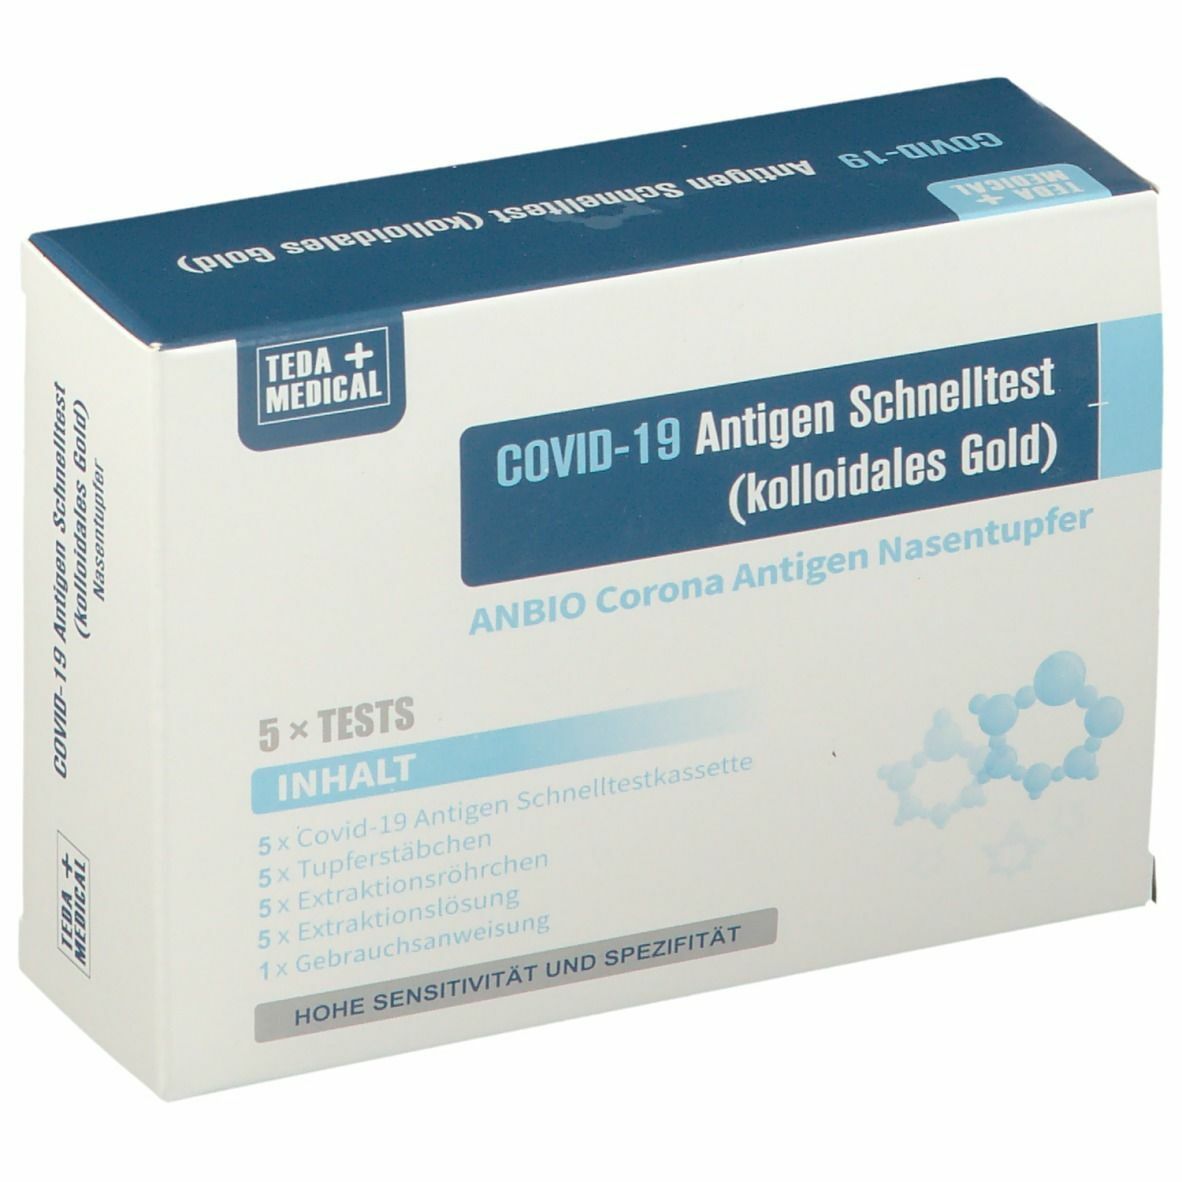 ANBIO Covid-19 Antigen Schnelltest 50 Stück